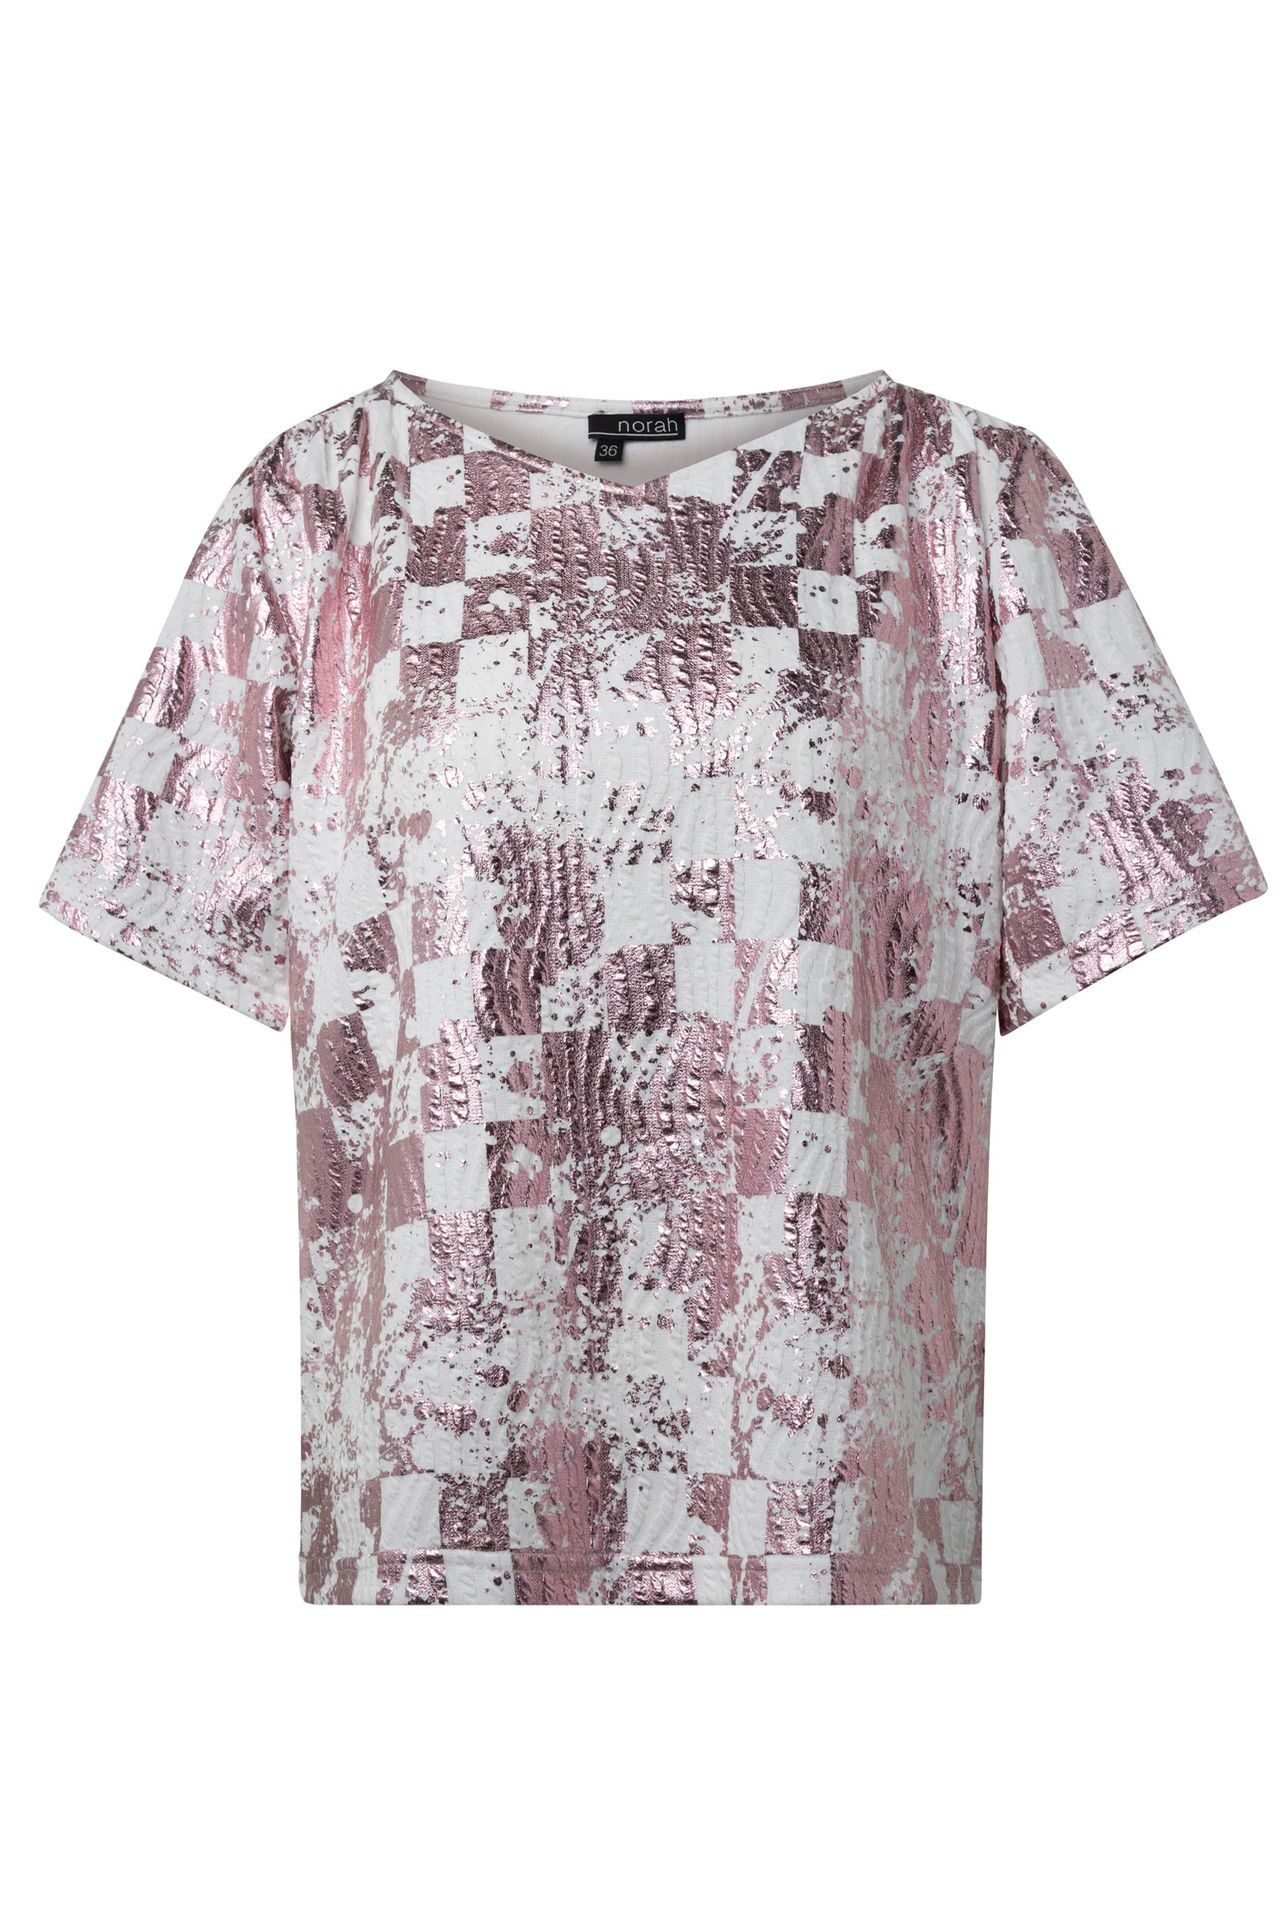 Norah Roze shirt pink/white 215044-931